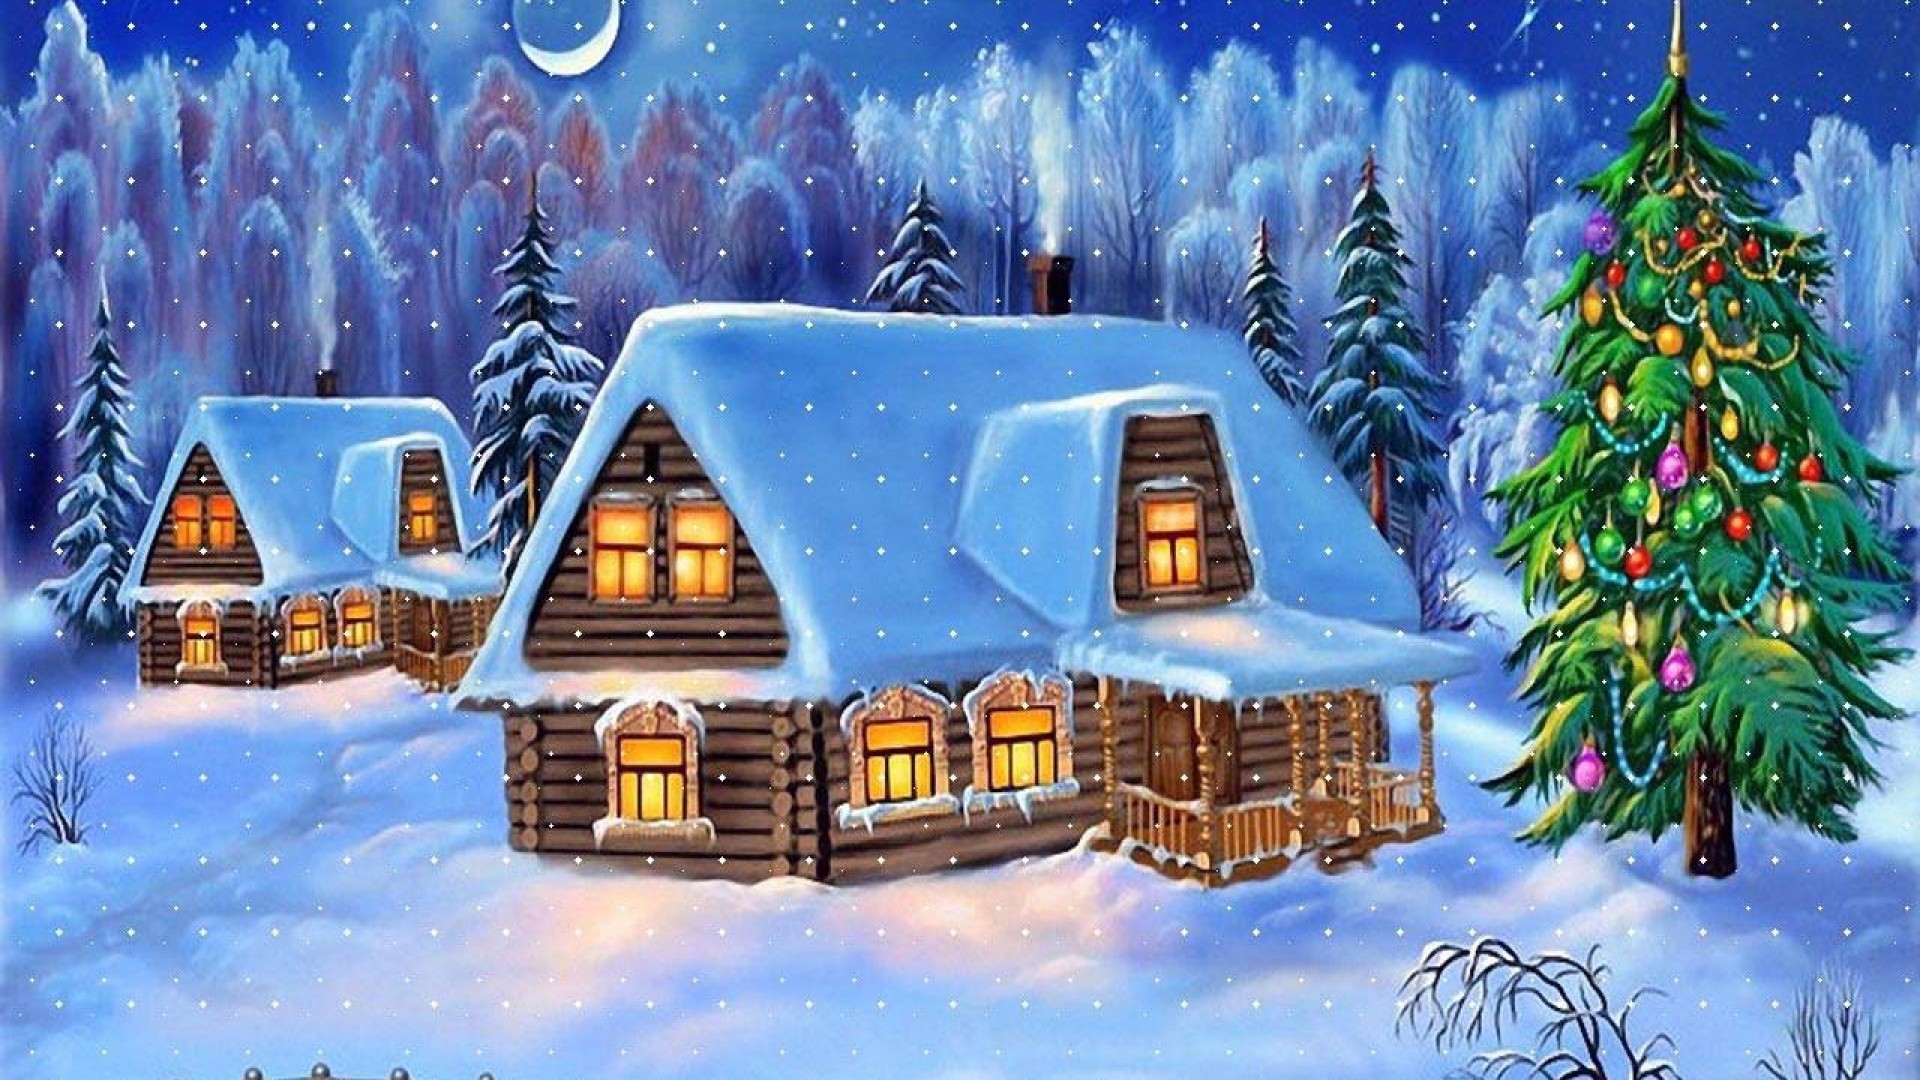 1920x1080, Winter, Schnee, Weihnachten, Karte Apple - Winter Snowfall Christmas House Background - HD Wallpaper 